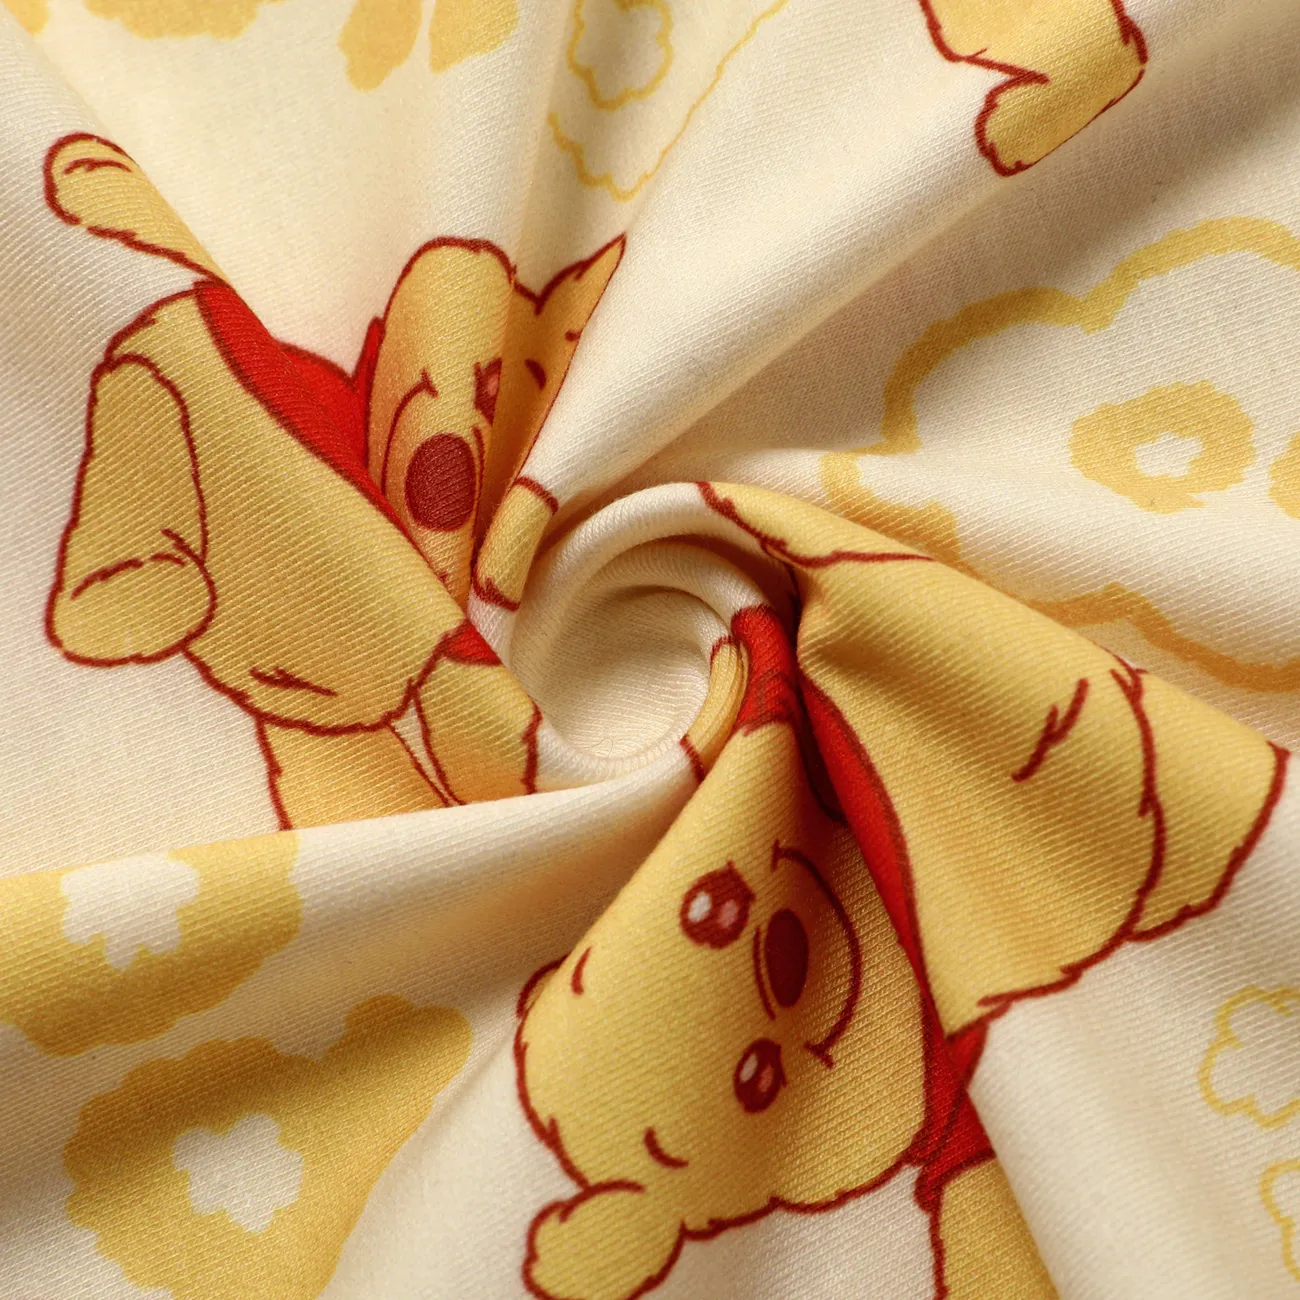 Disney Winnie the Pooh 2件 嬰兒 中性 熊 童趣 長袖 長腿連身衣 黃色 big image 1